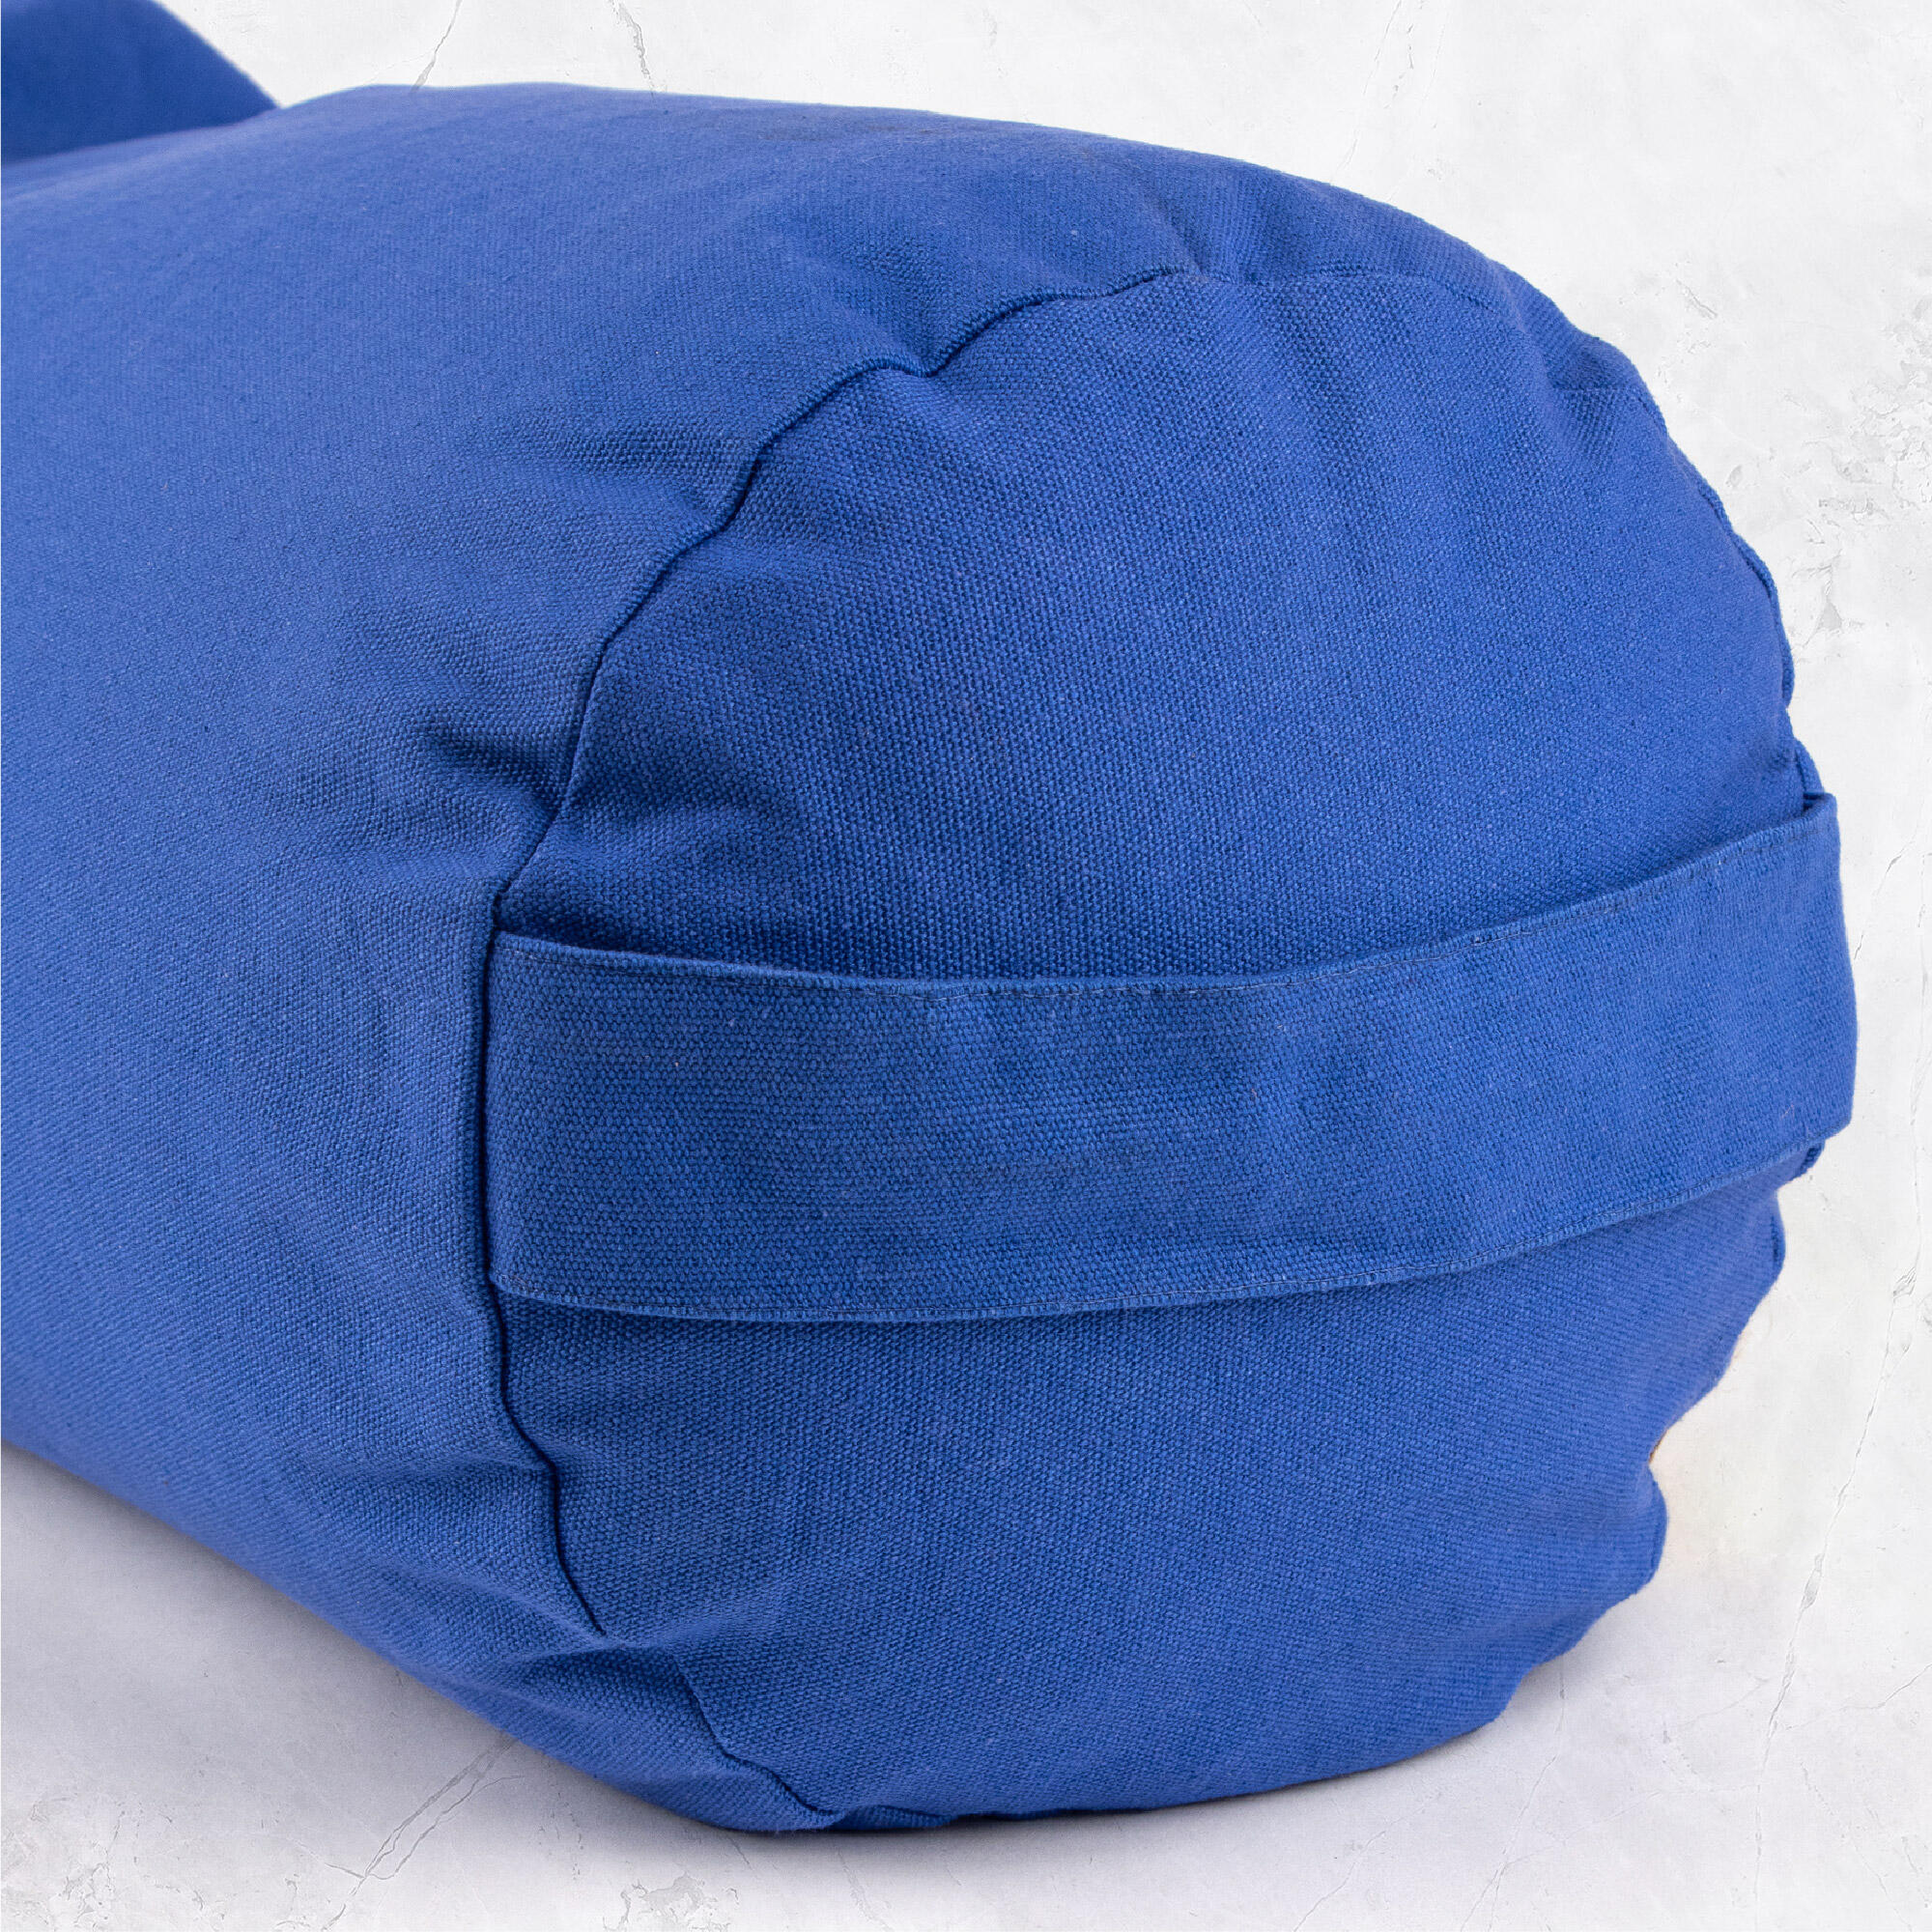 Myga Buckwheat Support Bolster Pillow - Blue 4/8